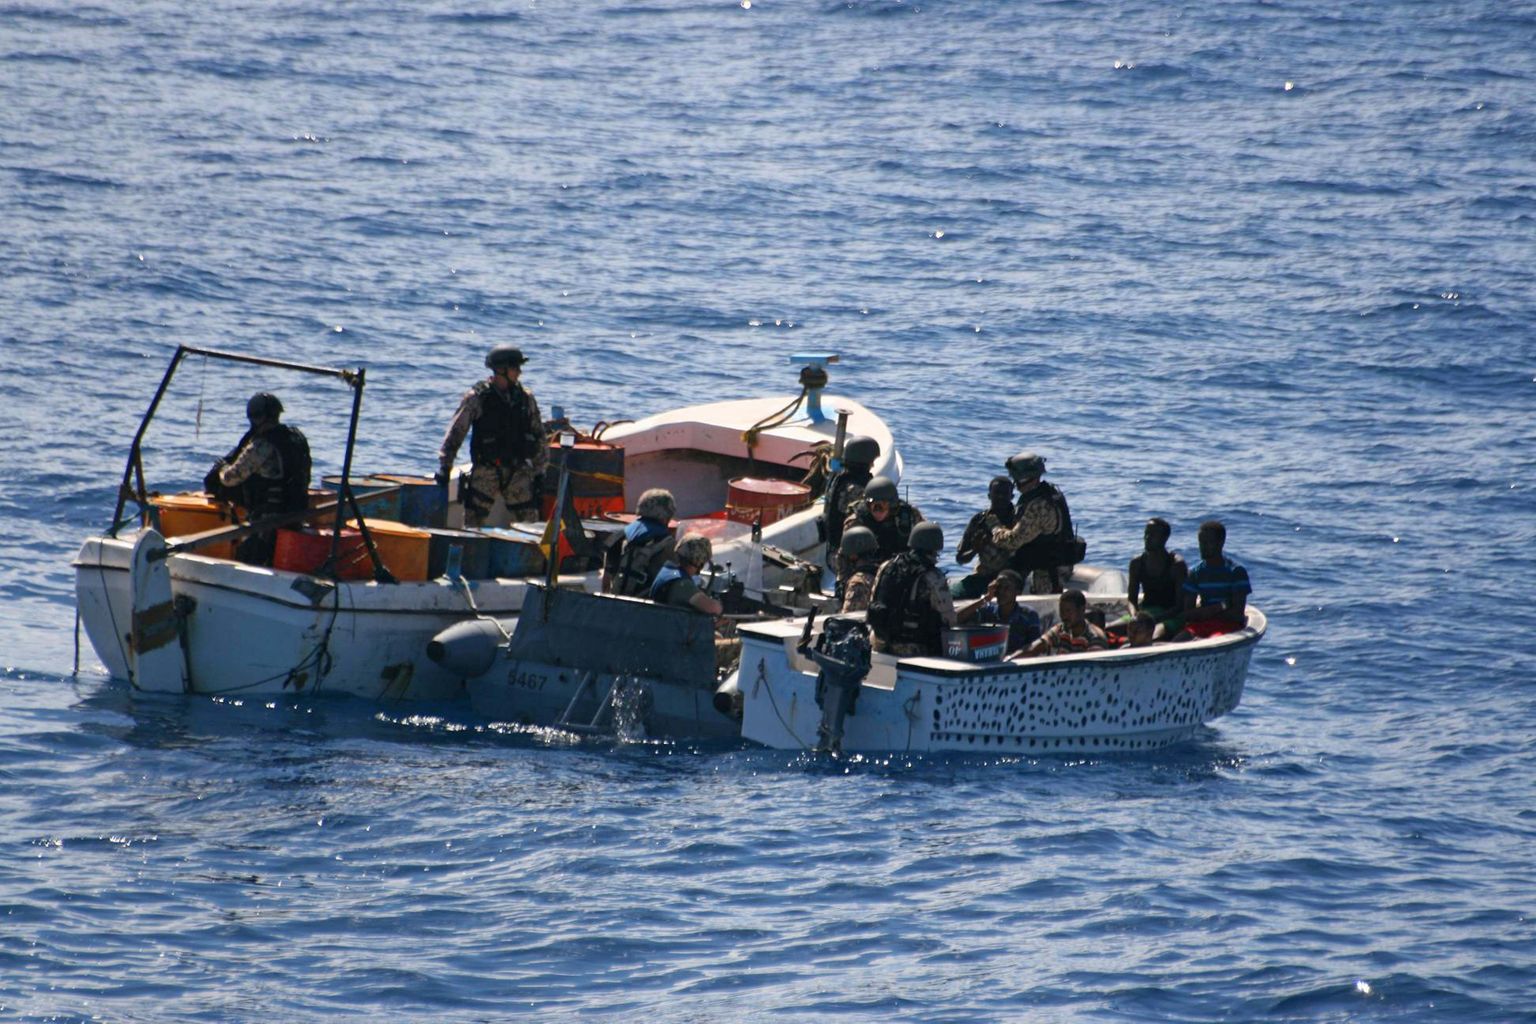 Somaalia piraadid.